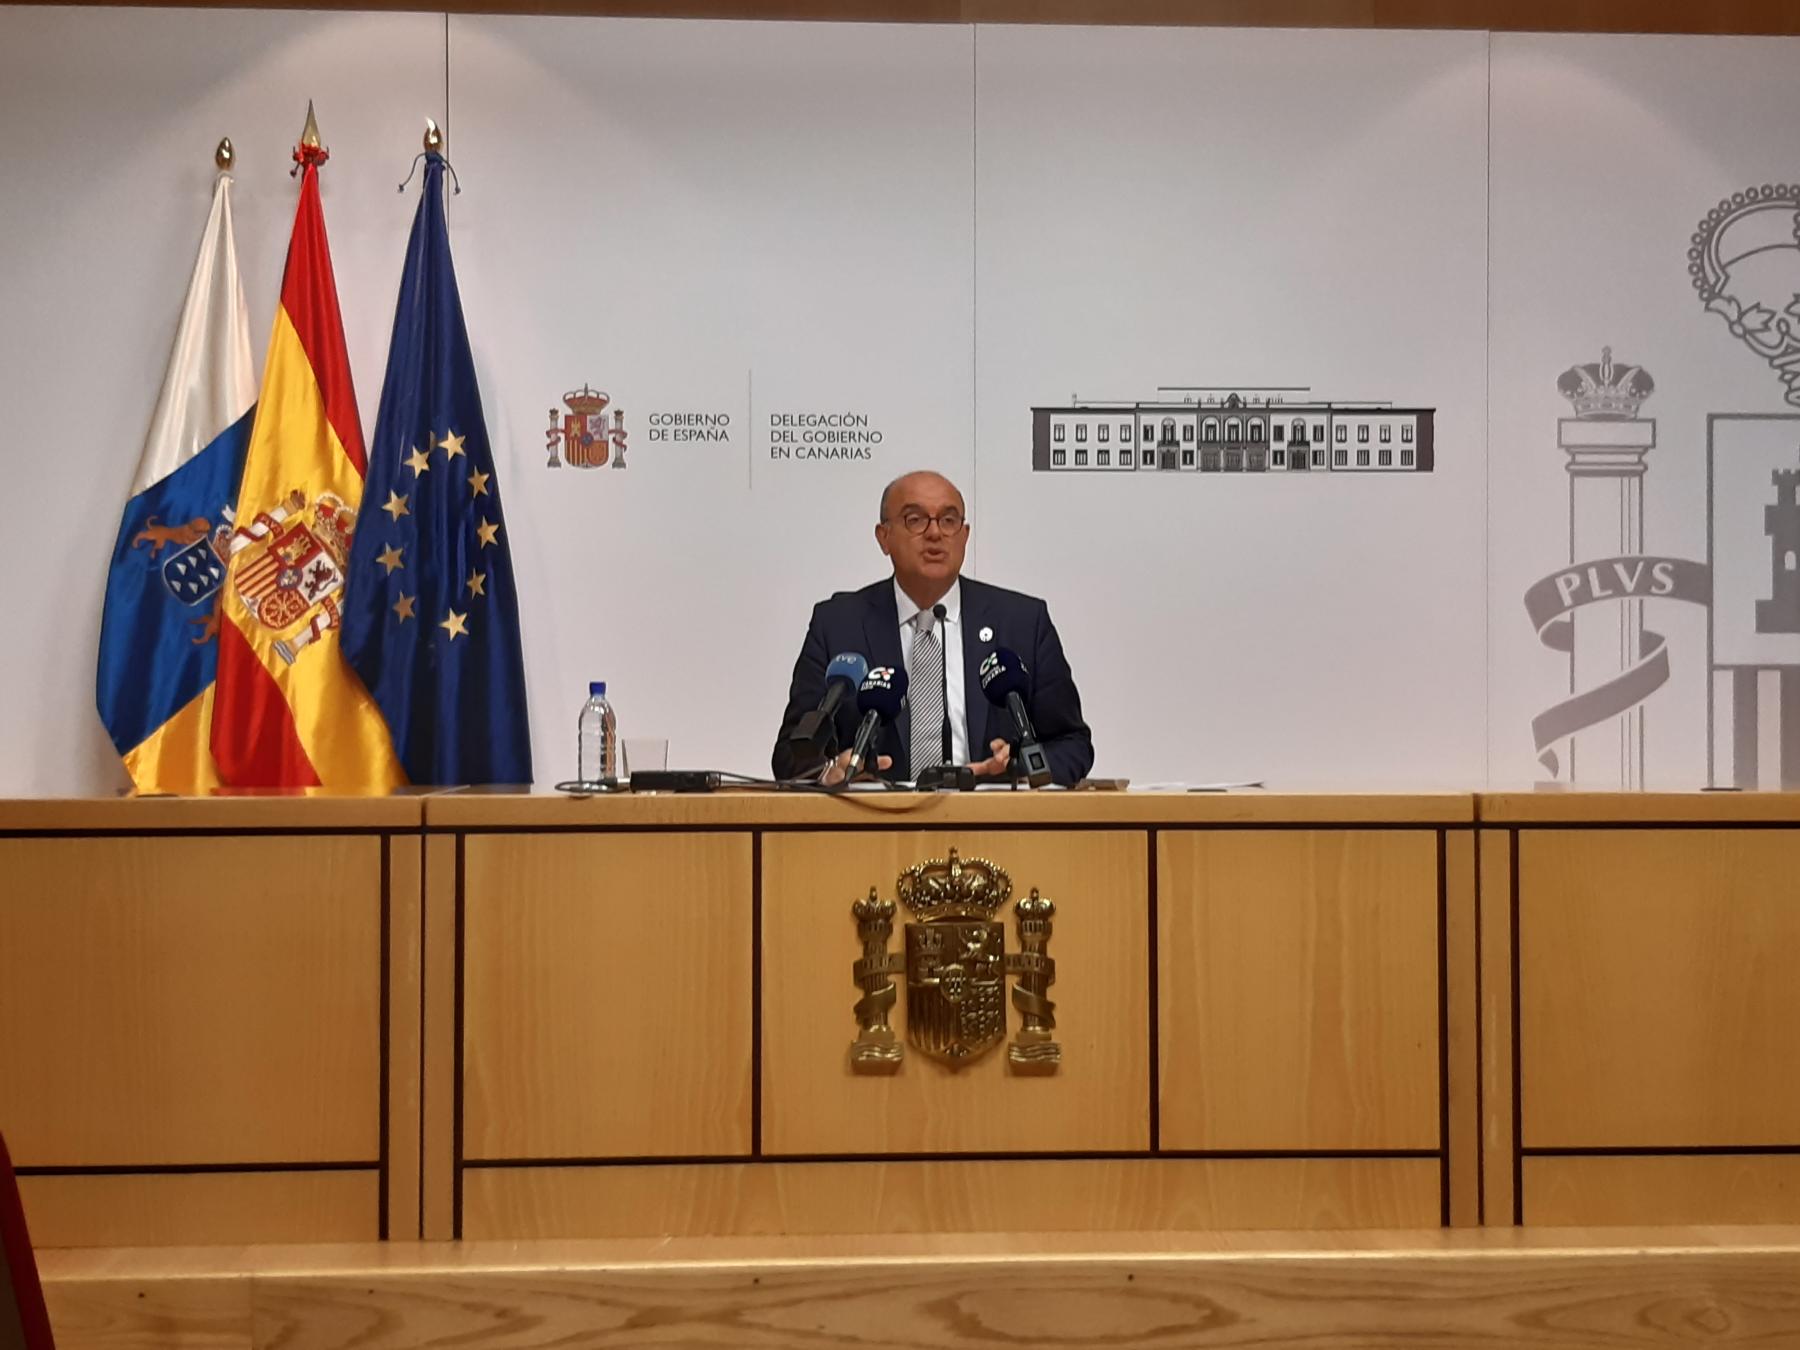 El Gobierno refuerza su compromiso con Canarias en 2022 con medidas para la cohesión social, el impulso económico y la digitalización, la transición ecológica y la recuperación de La Palma tras la crisis volcánica